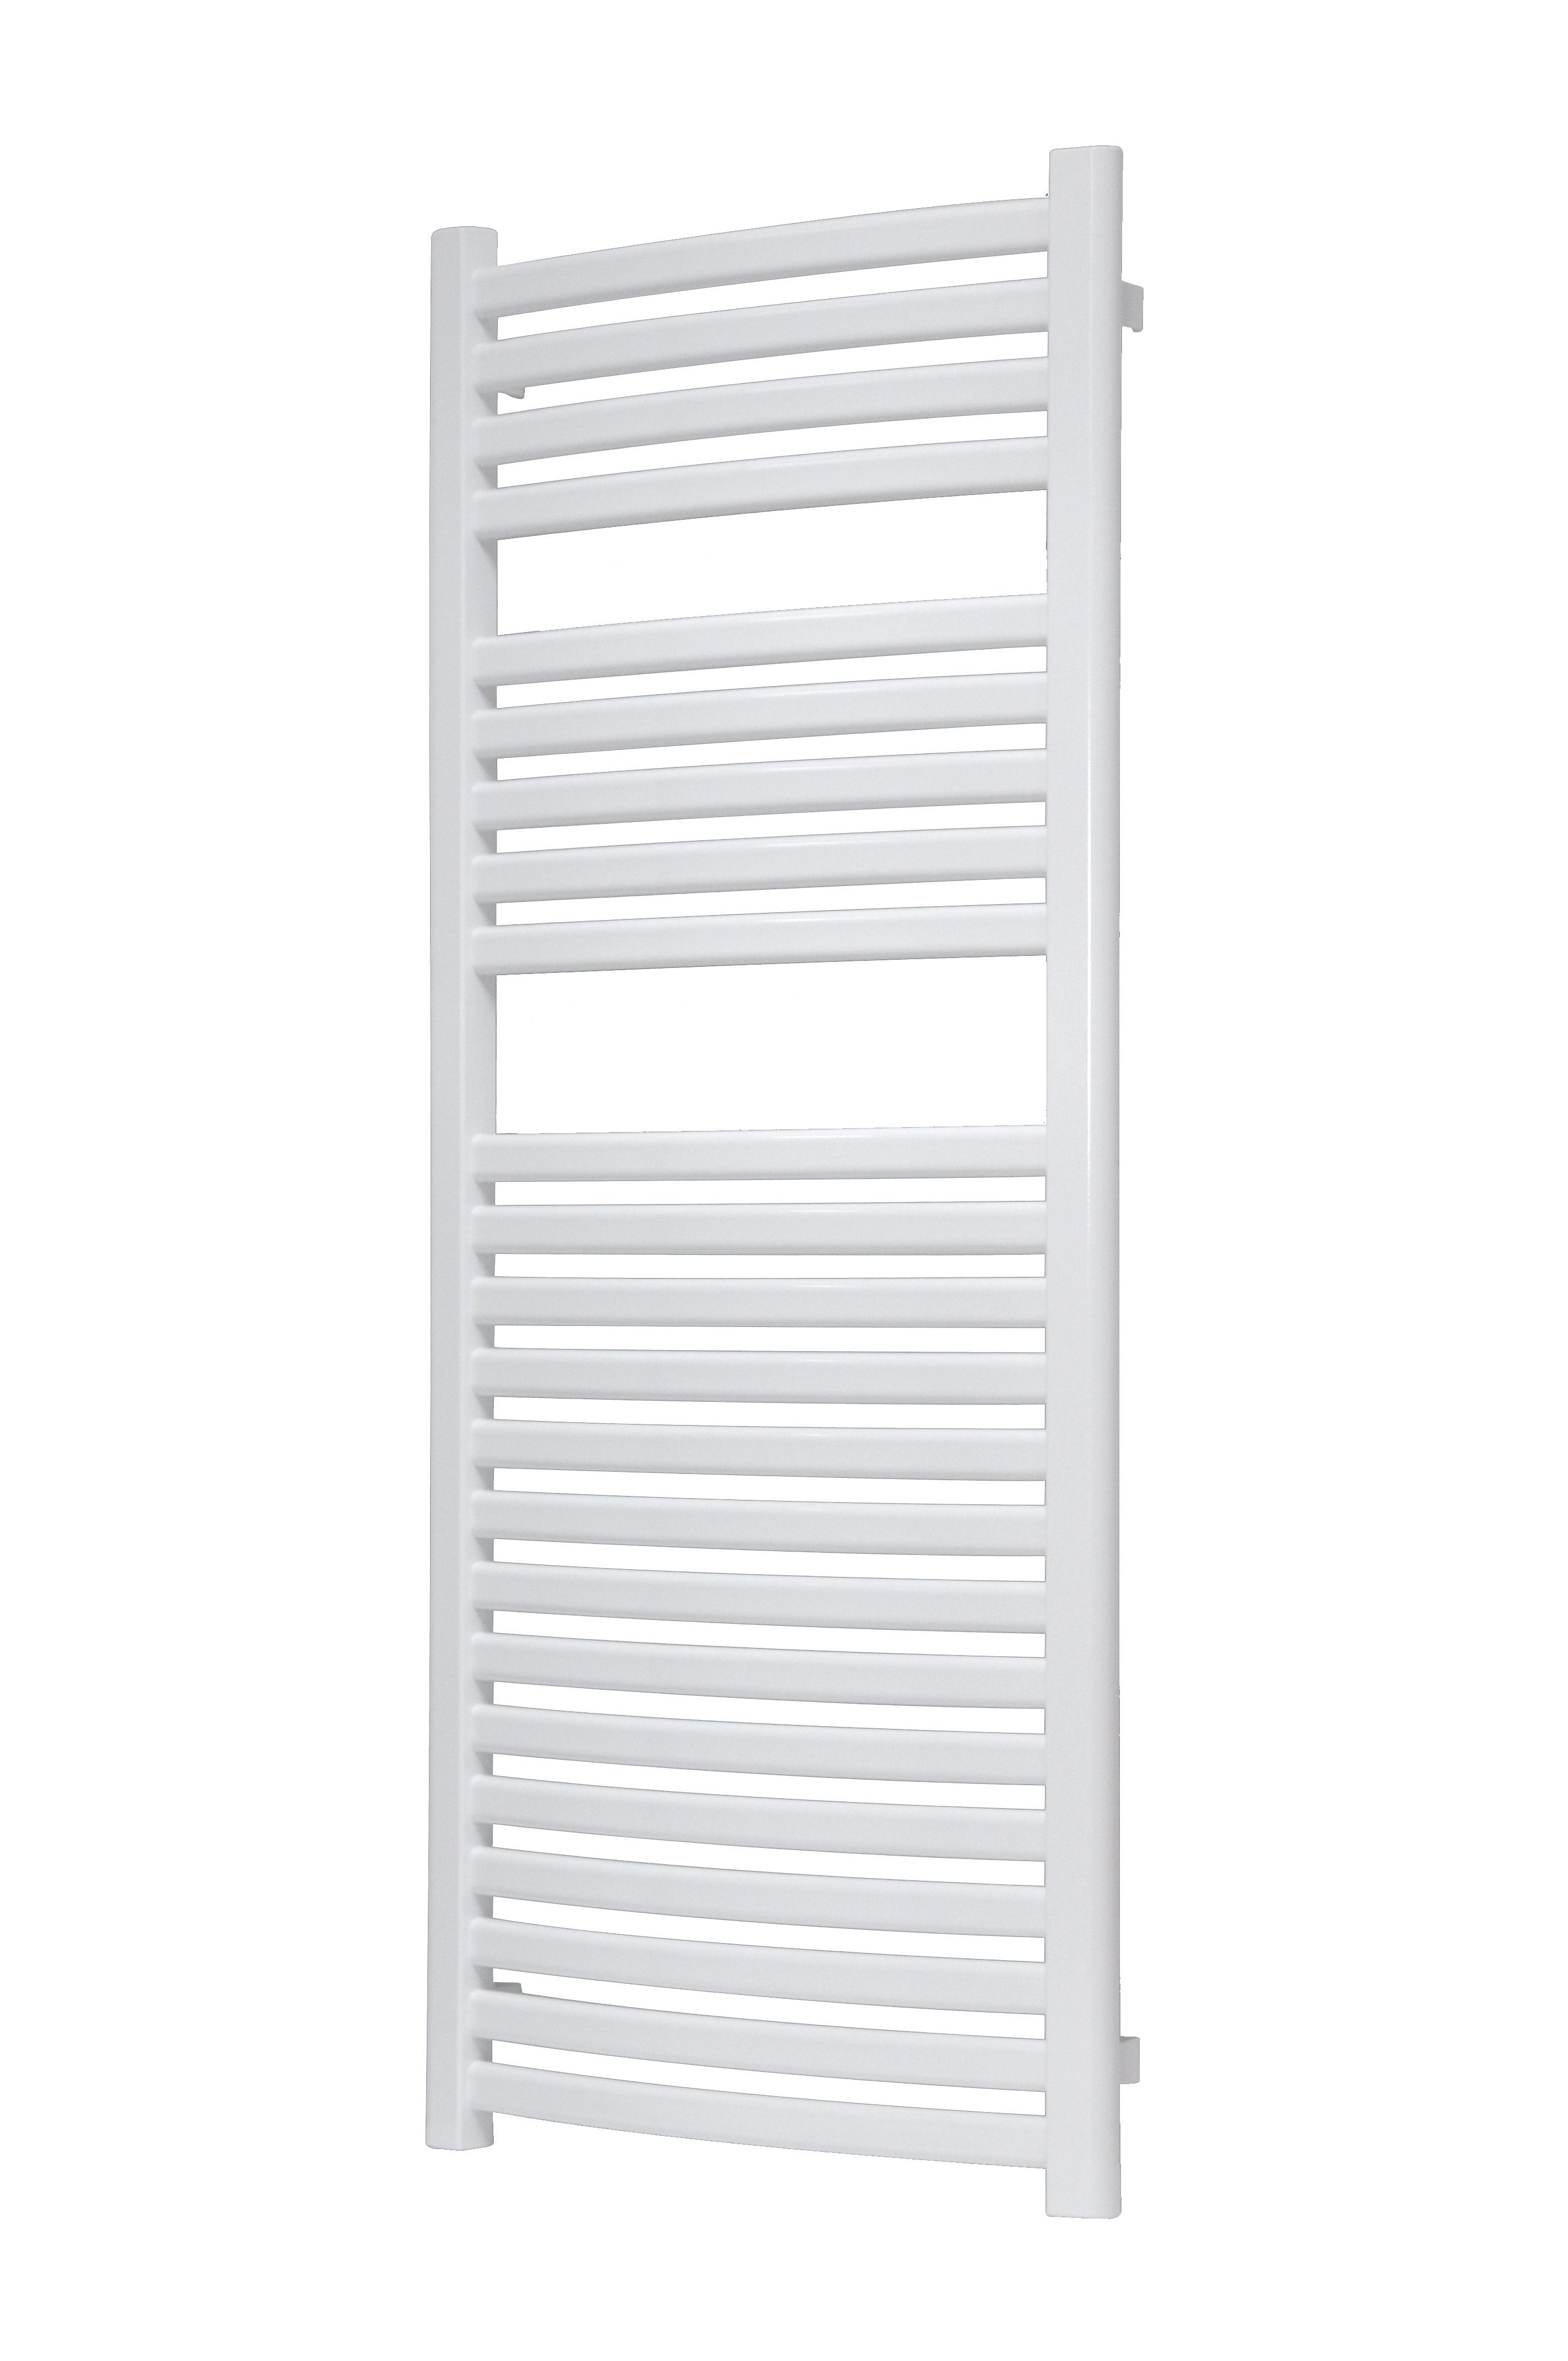 Vipera Kanza Rx enkele handdoekradiator 50 x 120 cm centrale verwarming hoogglans wit zijaansluiting 521W